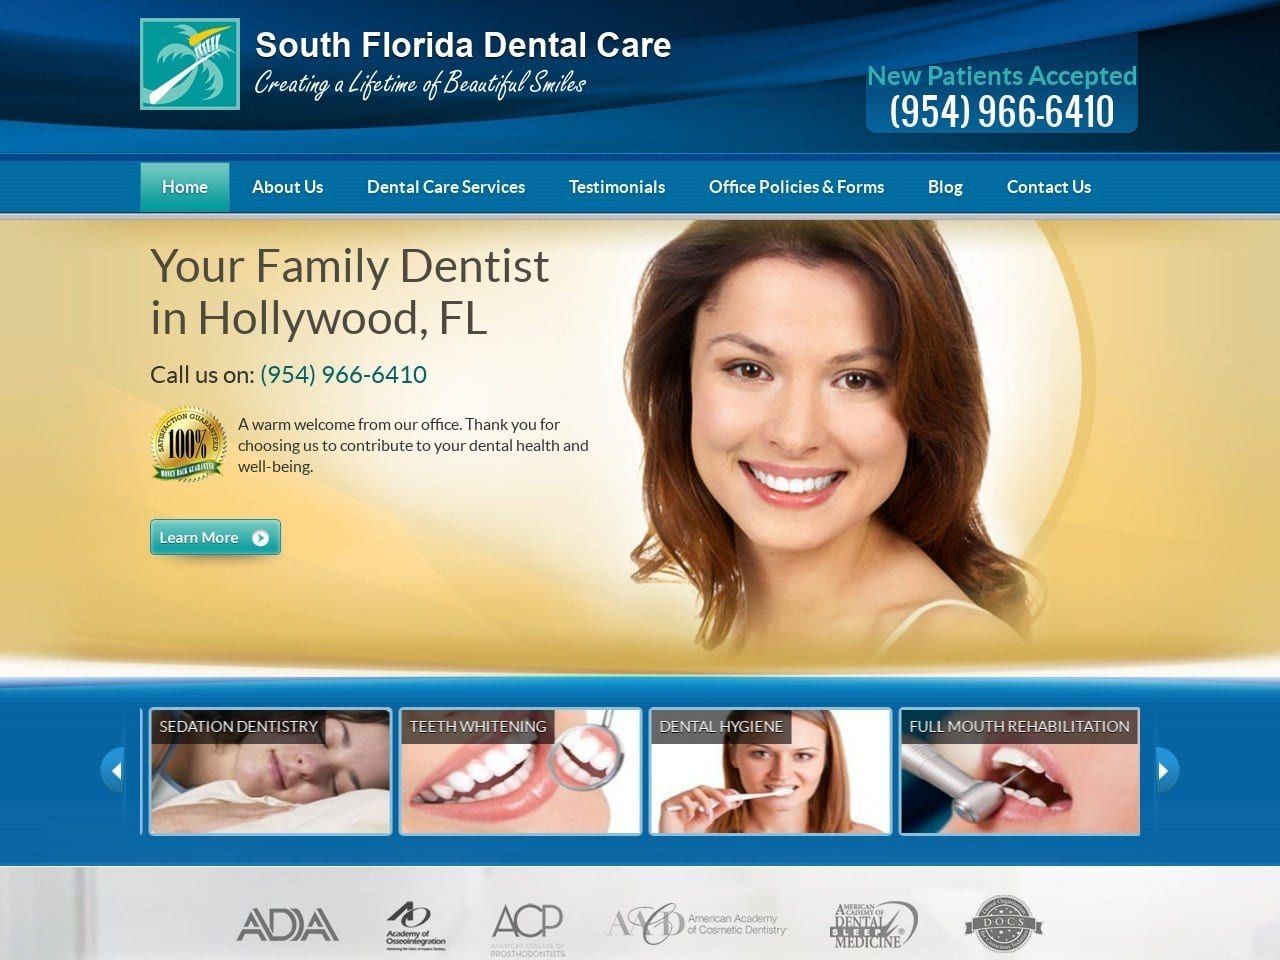 South Florida Dental Care Website Screenshot from southfloridadentalcare.com